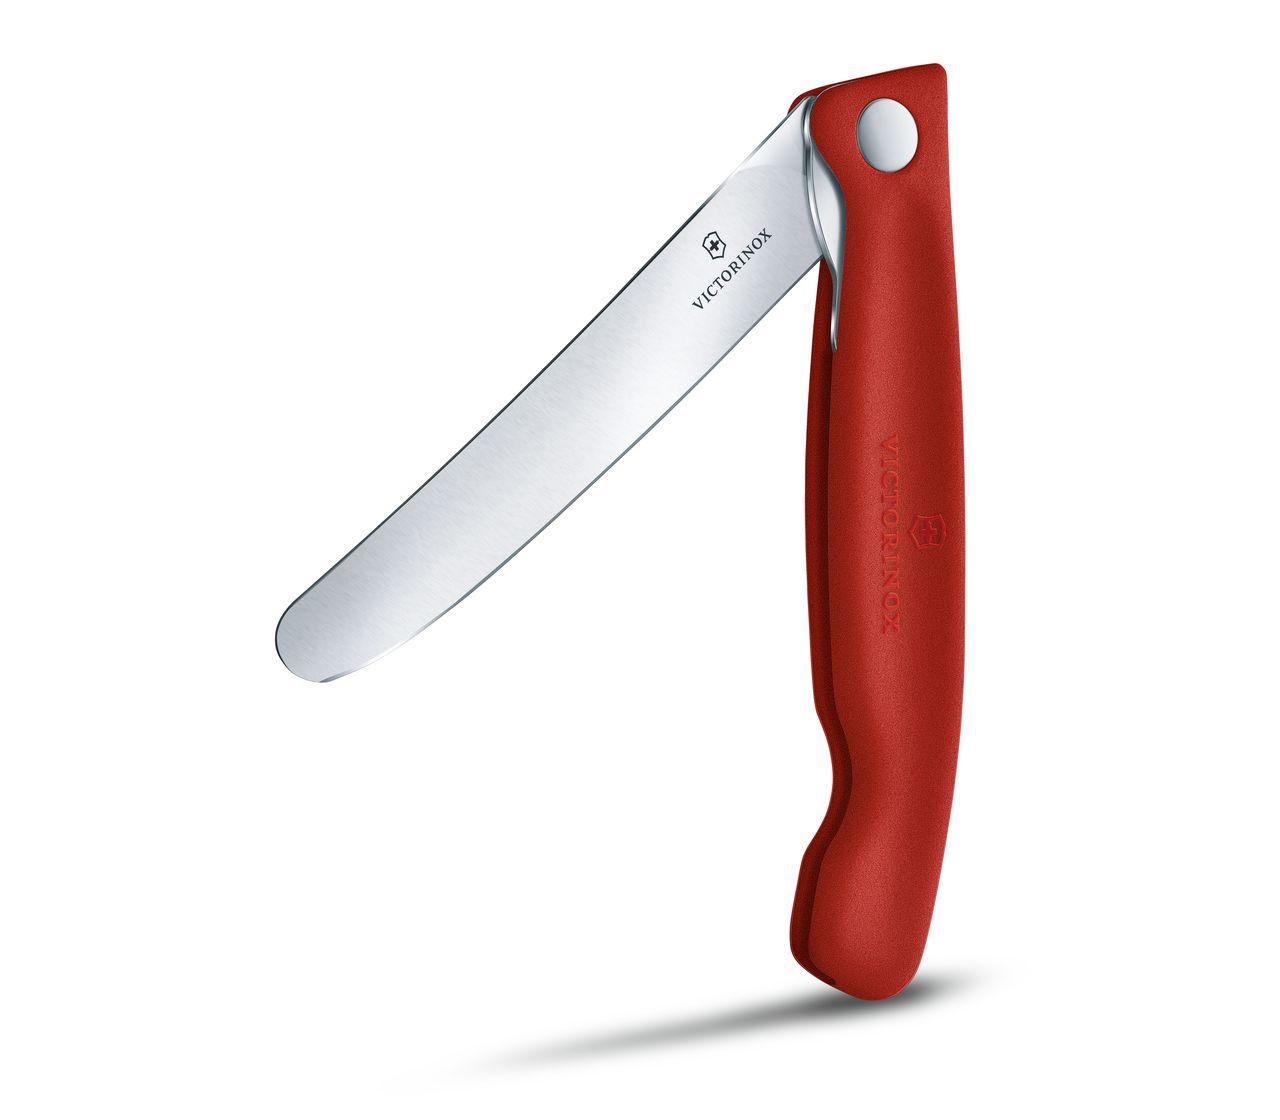 Swiss Classic Picnic Knife-6.7801.FB